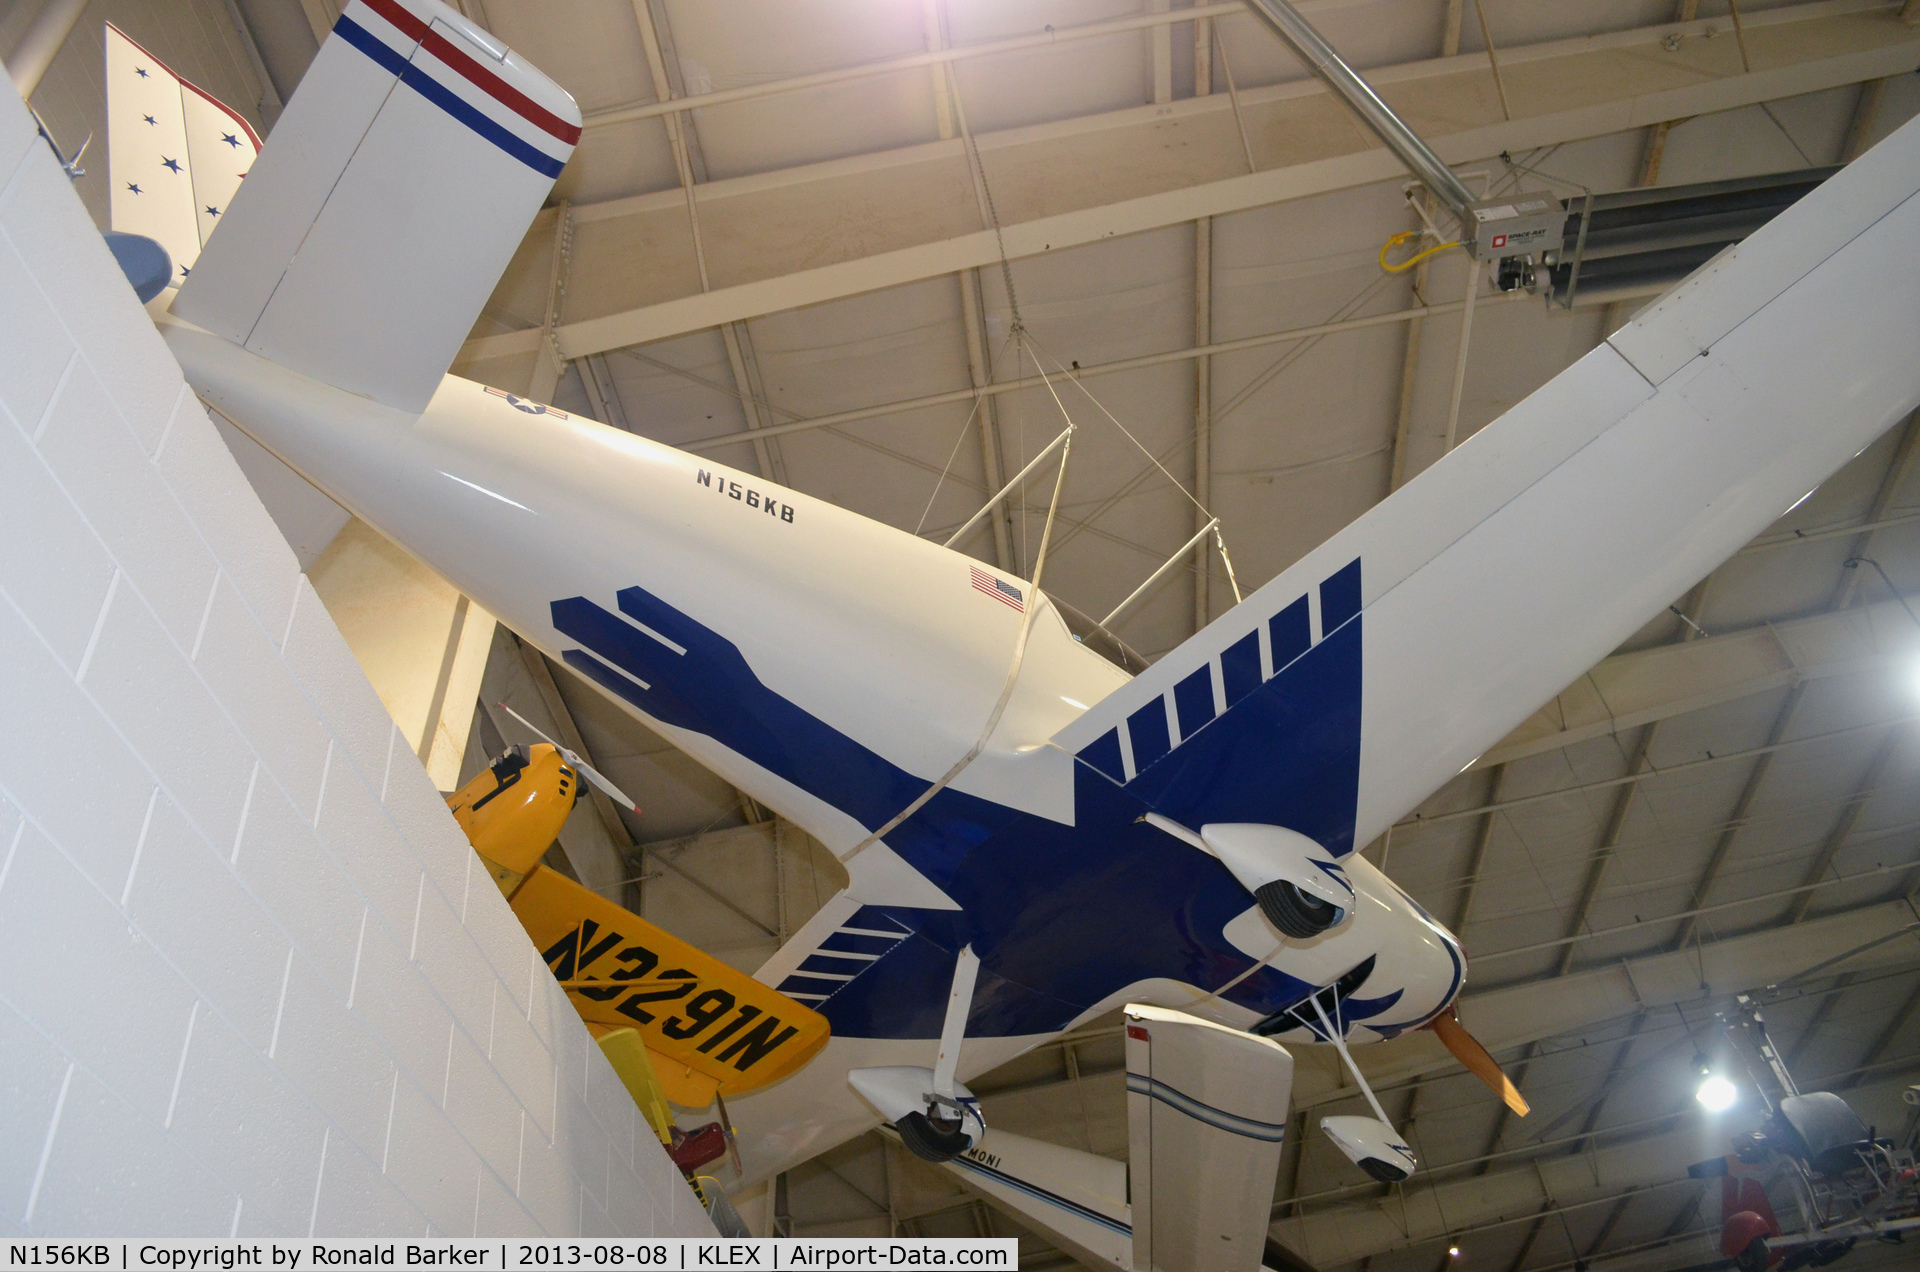 N156KB, 1991 Aero Designs Pulsar C/N 156, Aviation Museum of KY